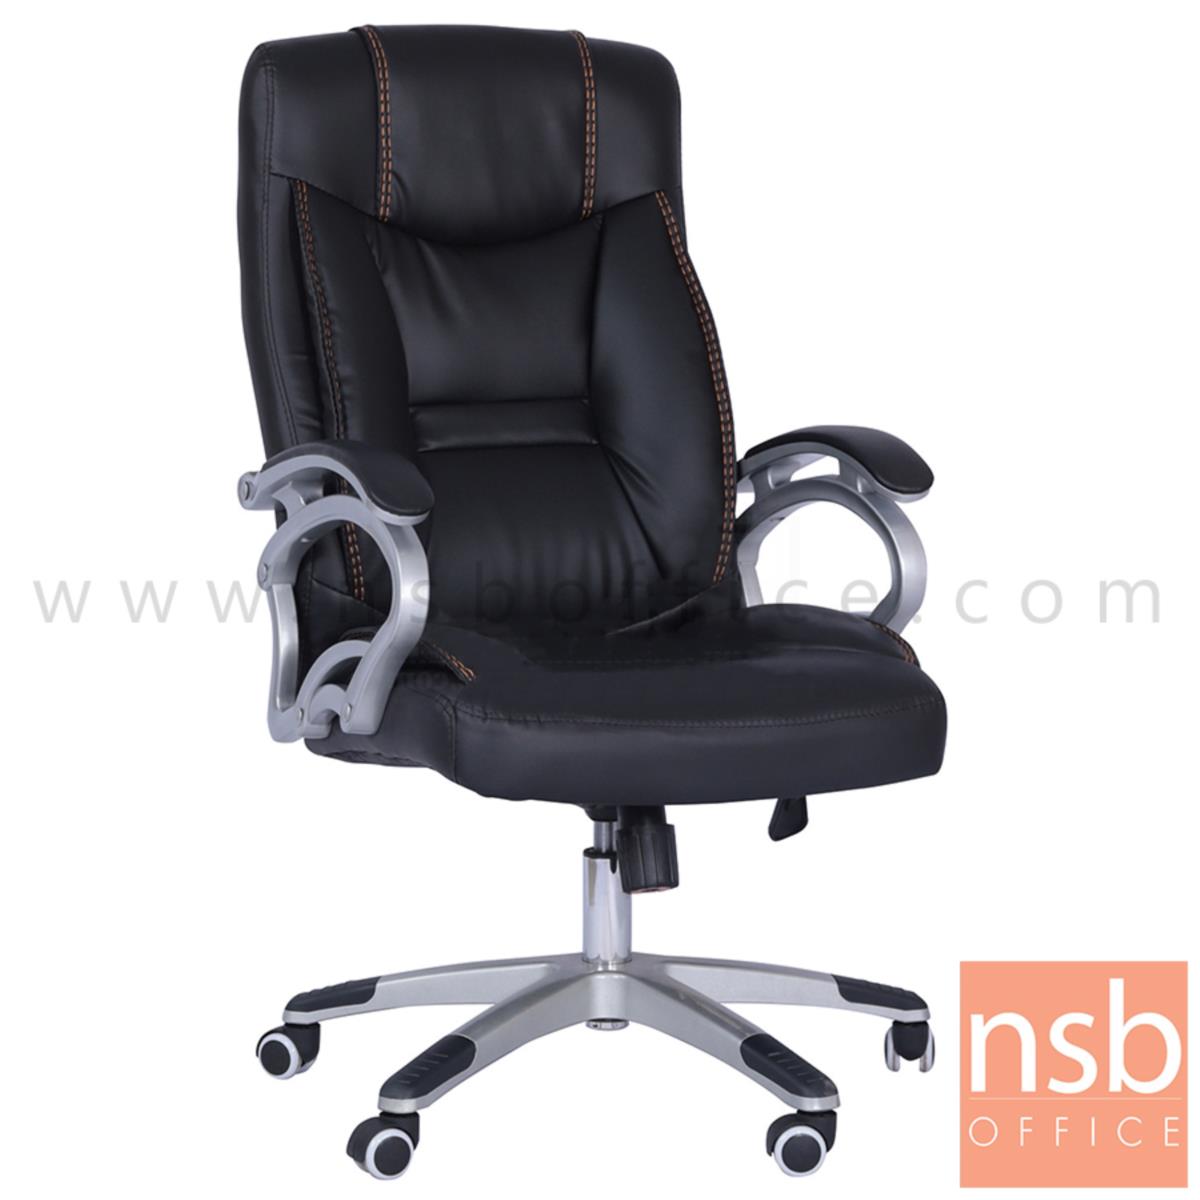 B01A522:เก้าอี้ผู้บริหารหนังเทียม รุ่น Shaffer (ชาฟเฟอร์)  ขาพลาสติก